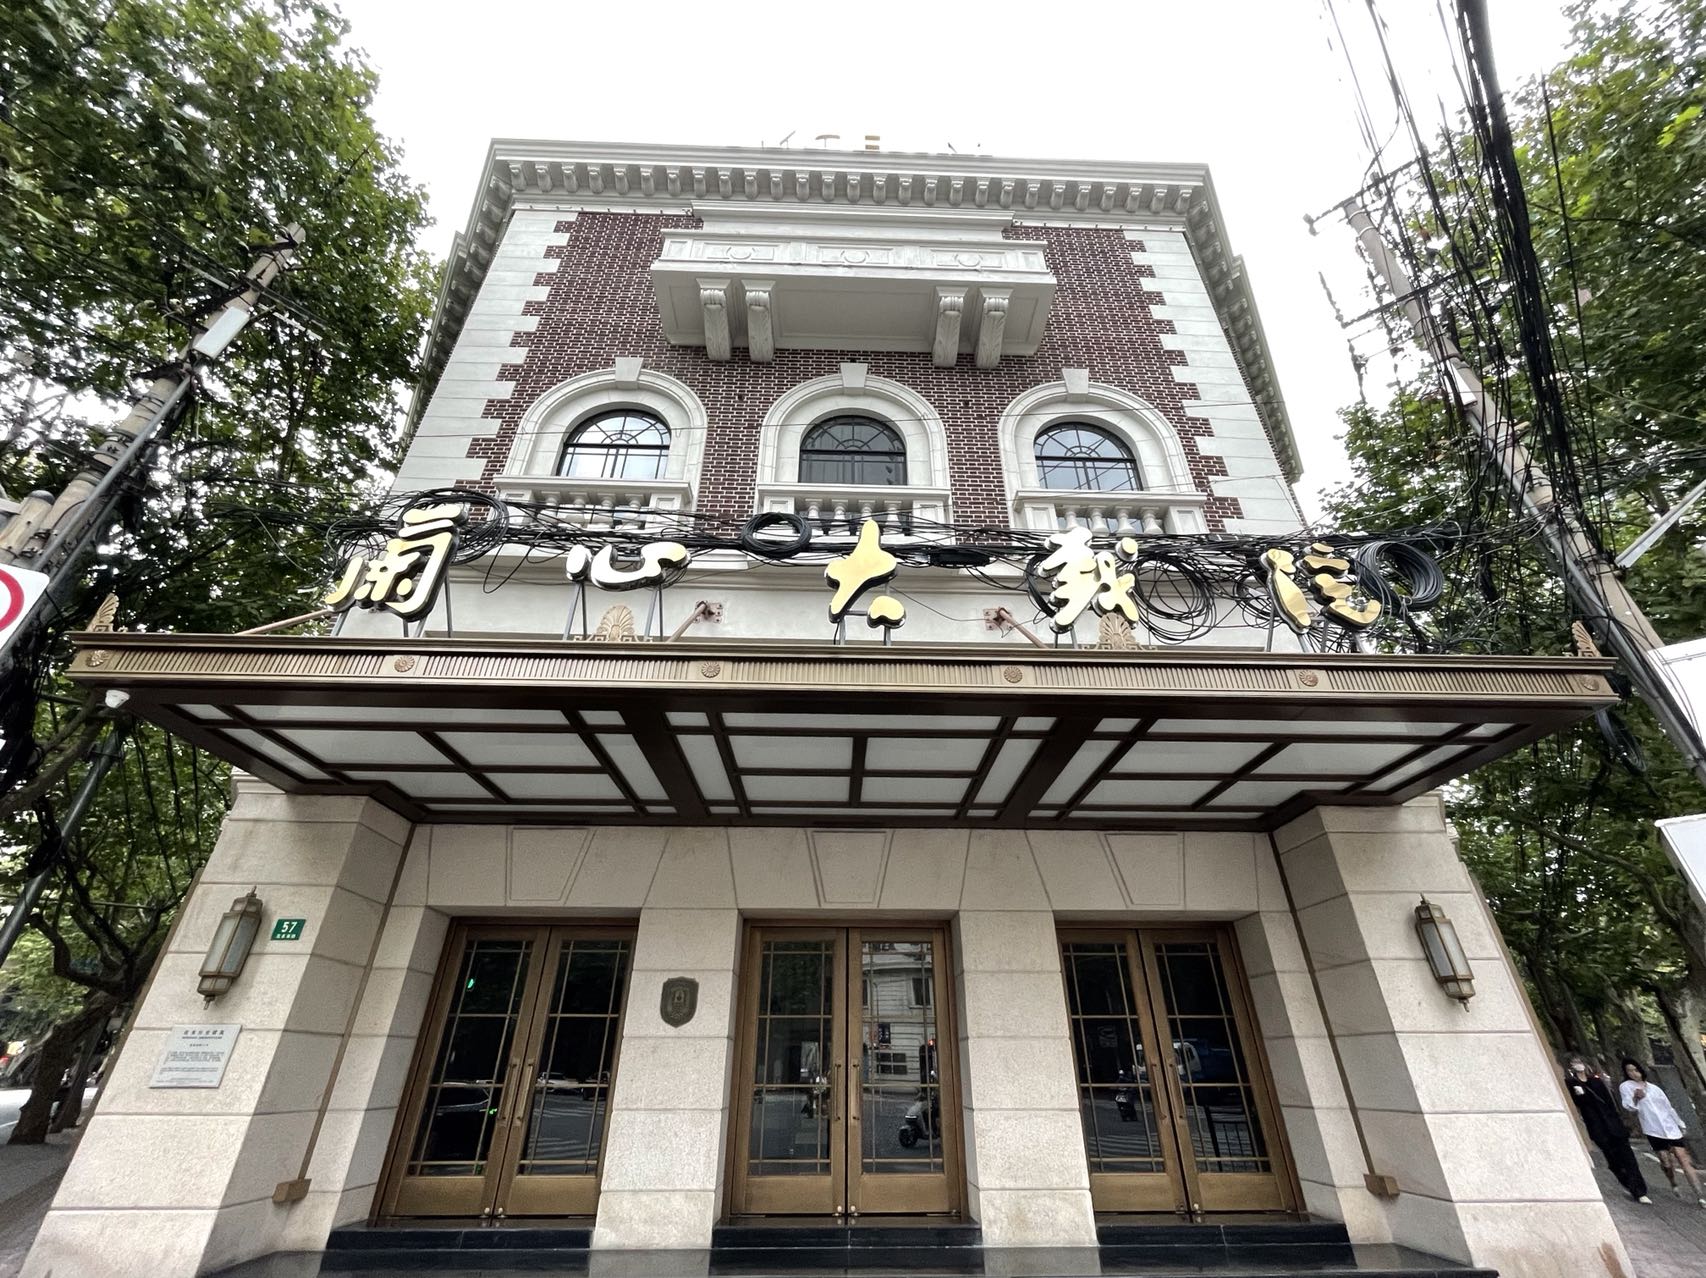 上海大剧院 -上海市文旅推广网-上海市文化和旅游局 提供专业文化和旅游及会展信息资讯